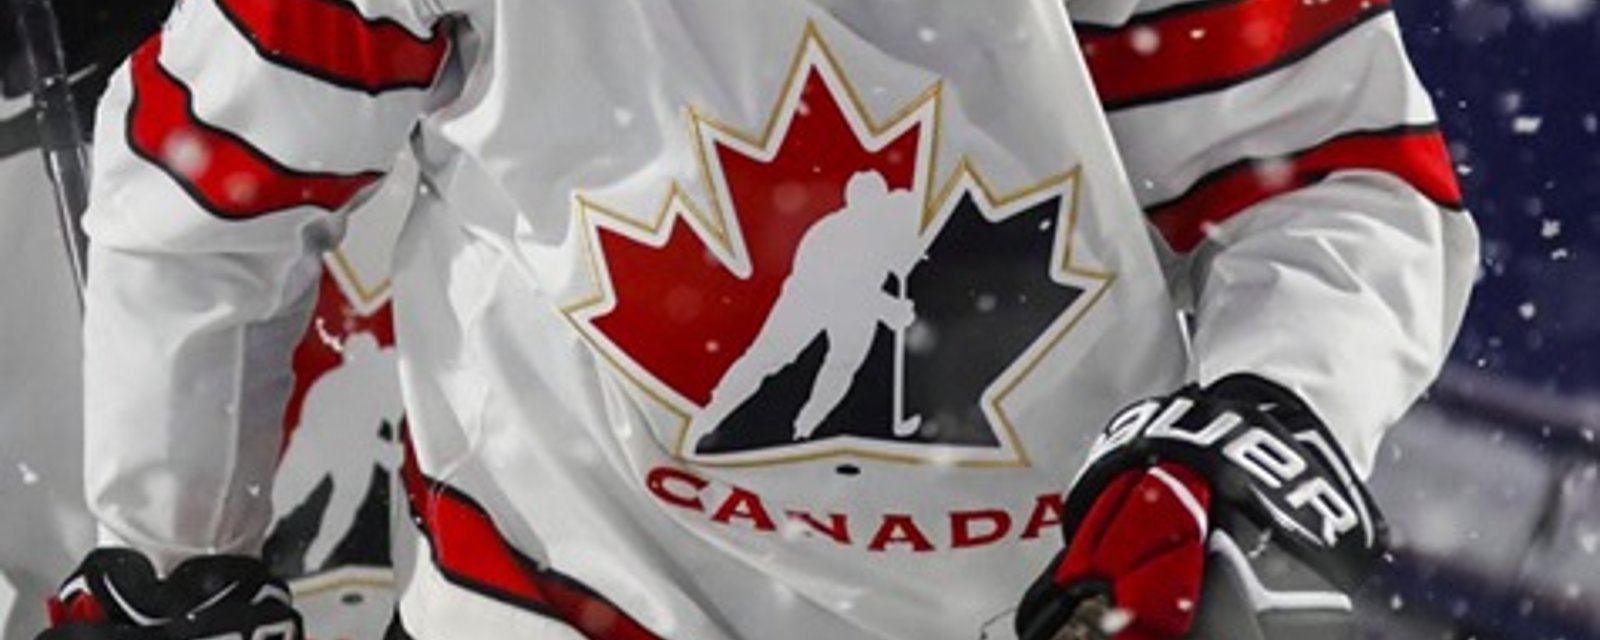 Un autre joueur de Team Canada 2018 se dissocie du viol collectif